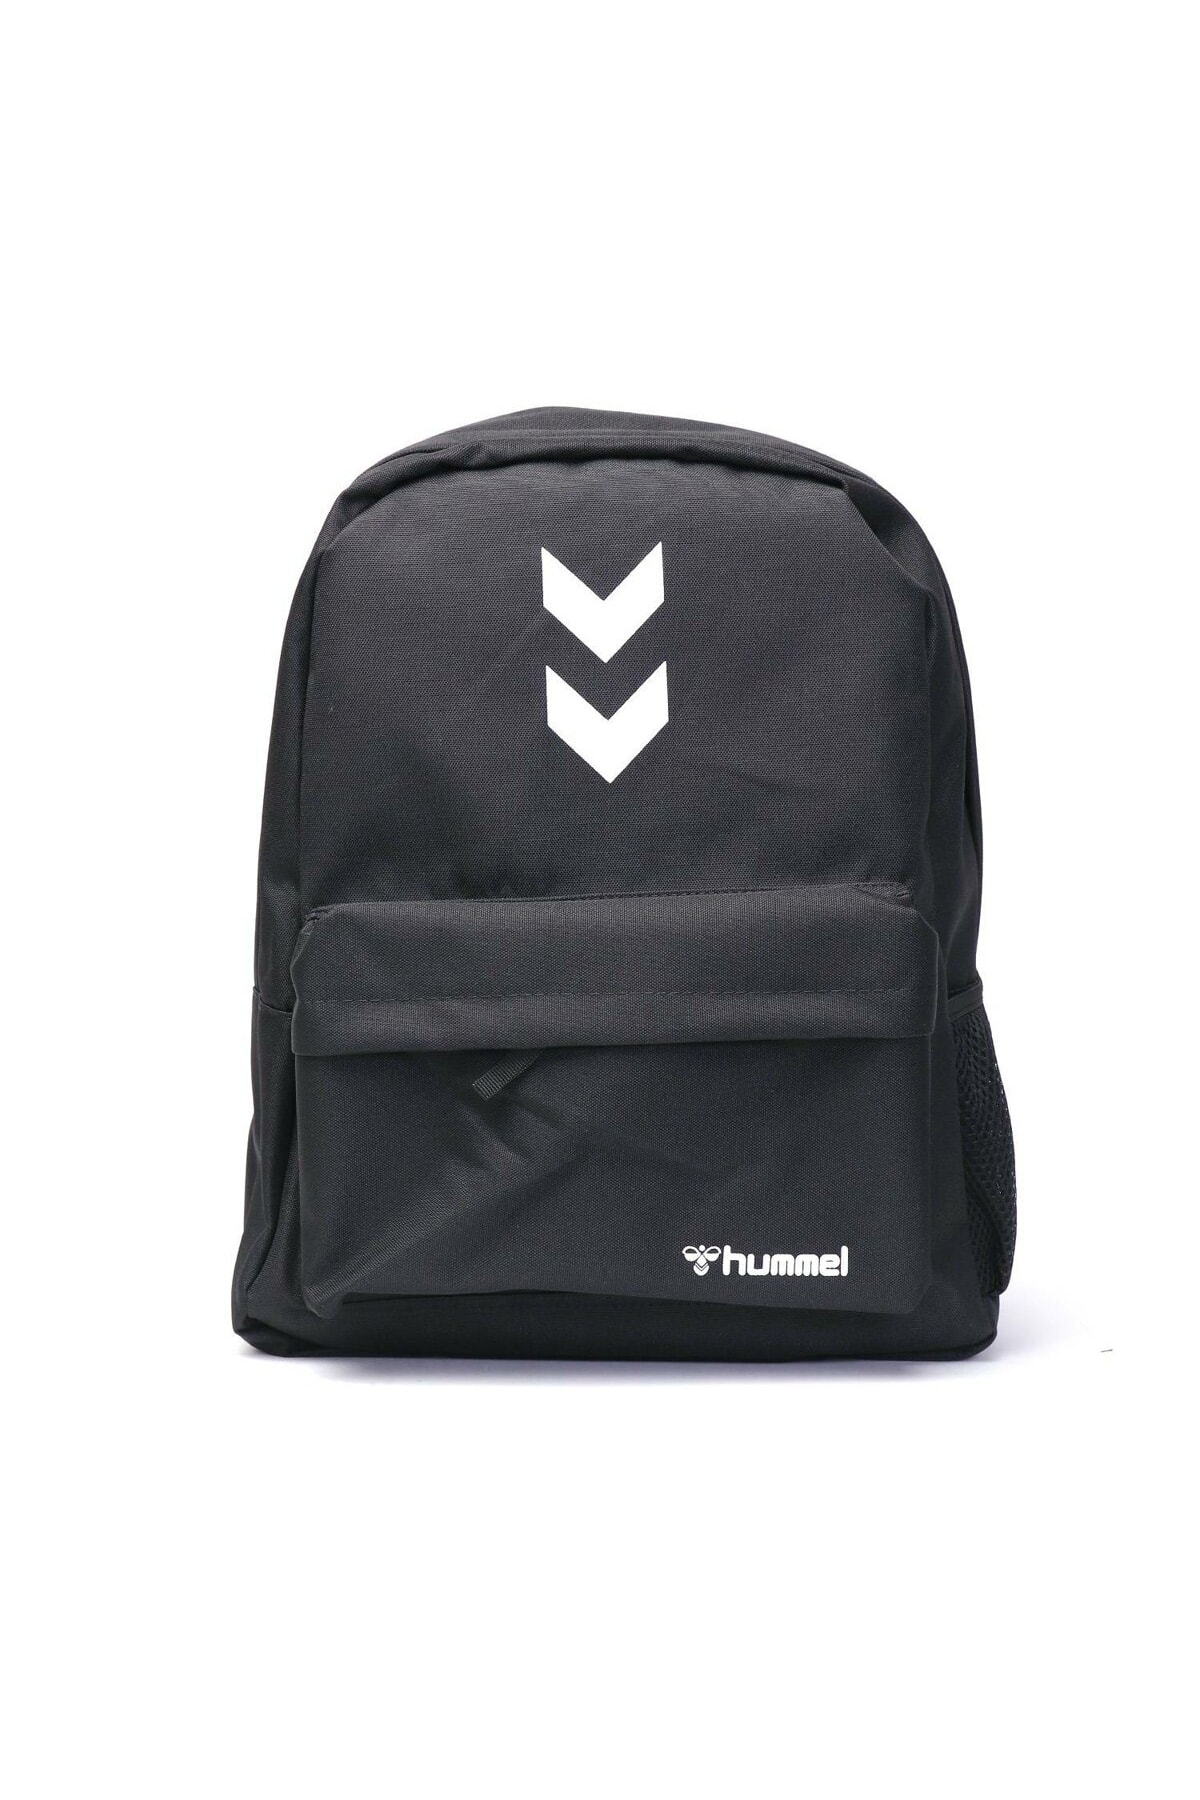 HUMMEL Backpack - Black - Licensed